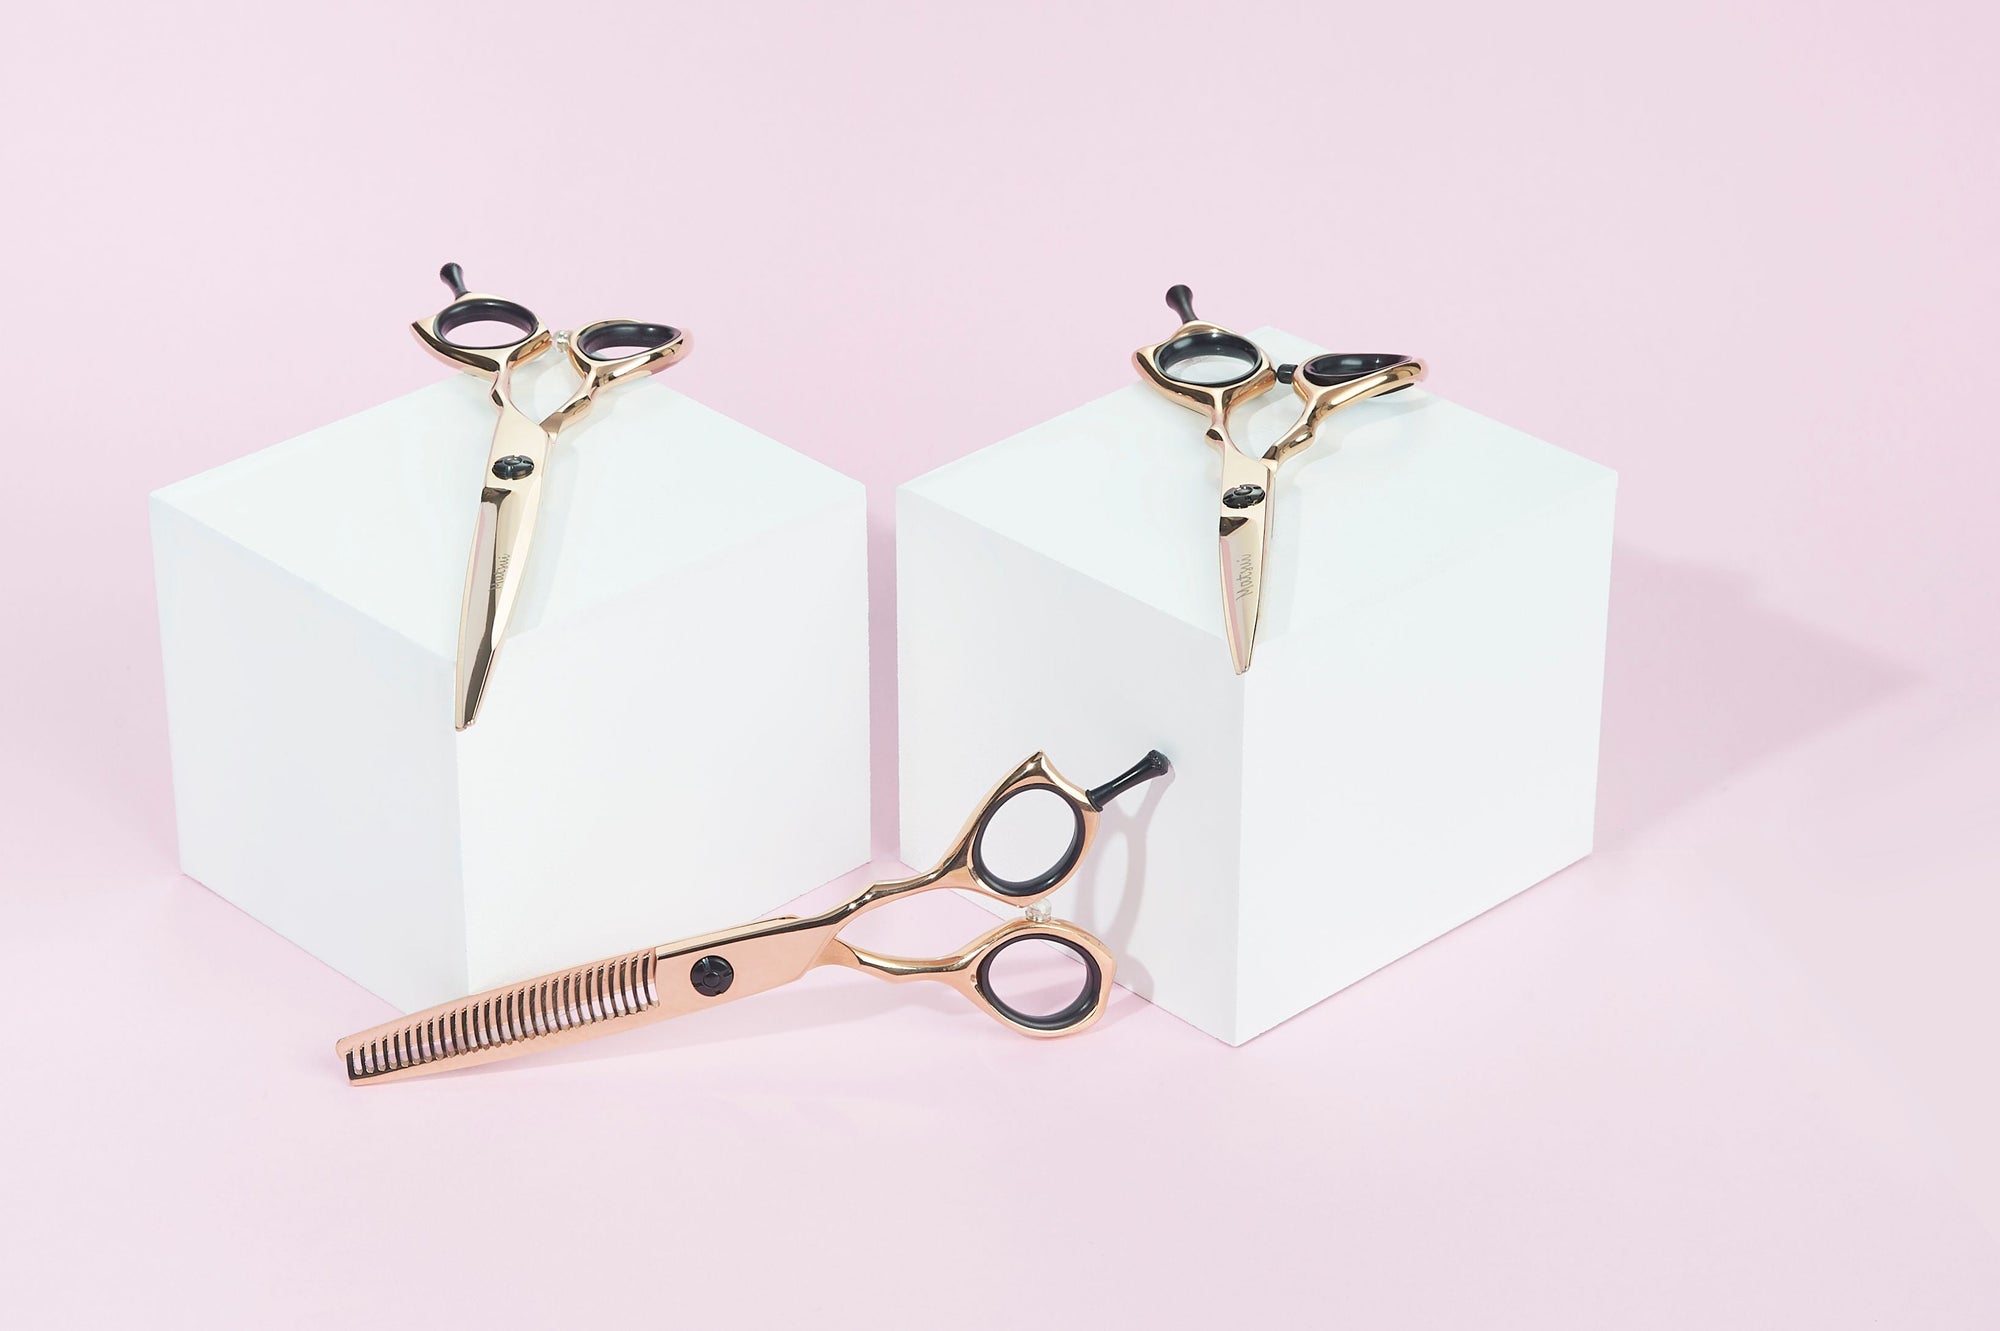 Rose Gold Matsui Precision Hair Shears, Best Professional Hair Cutting shears Triple Set (6740495892546)